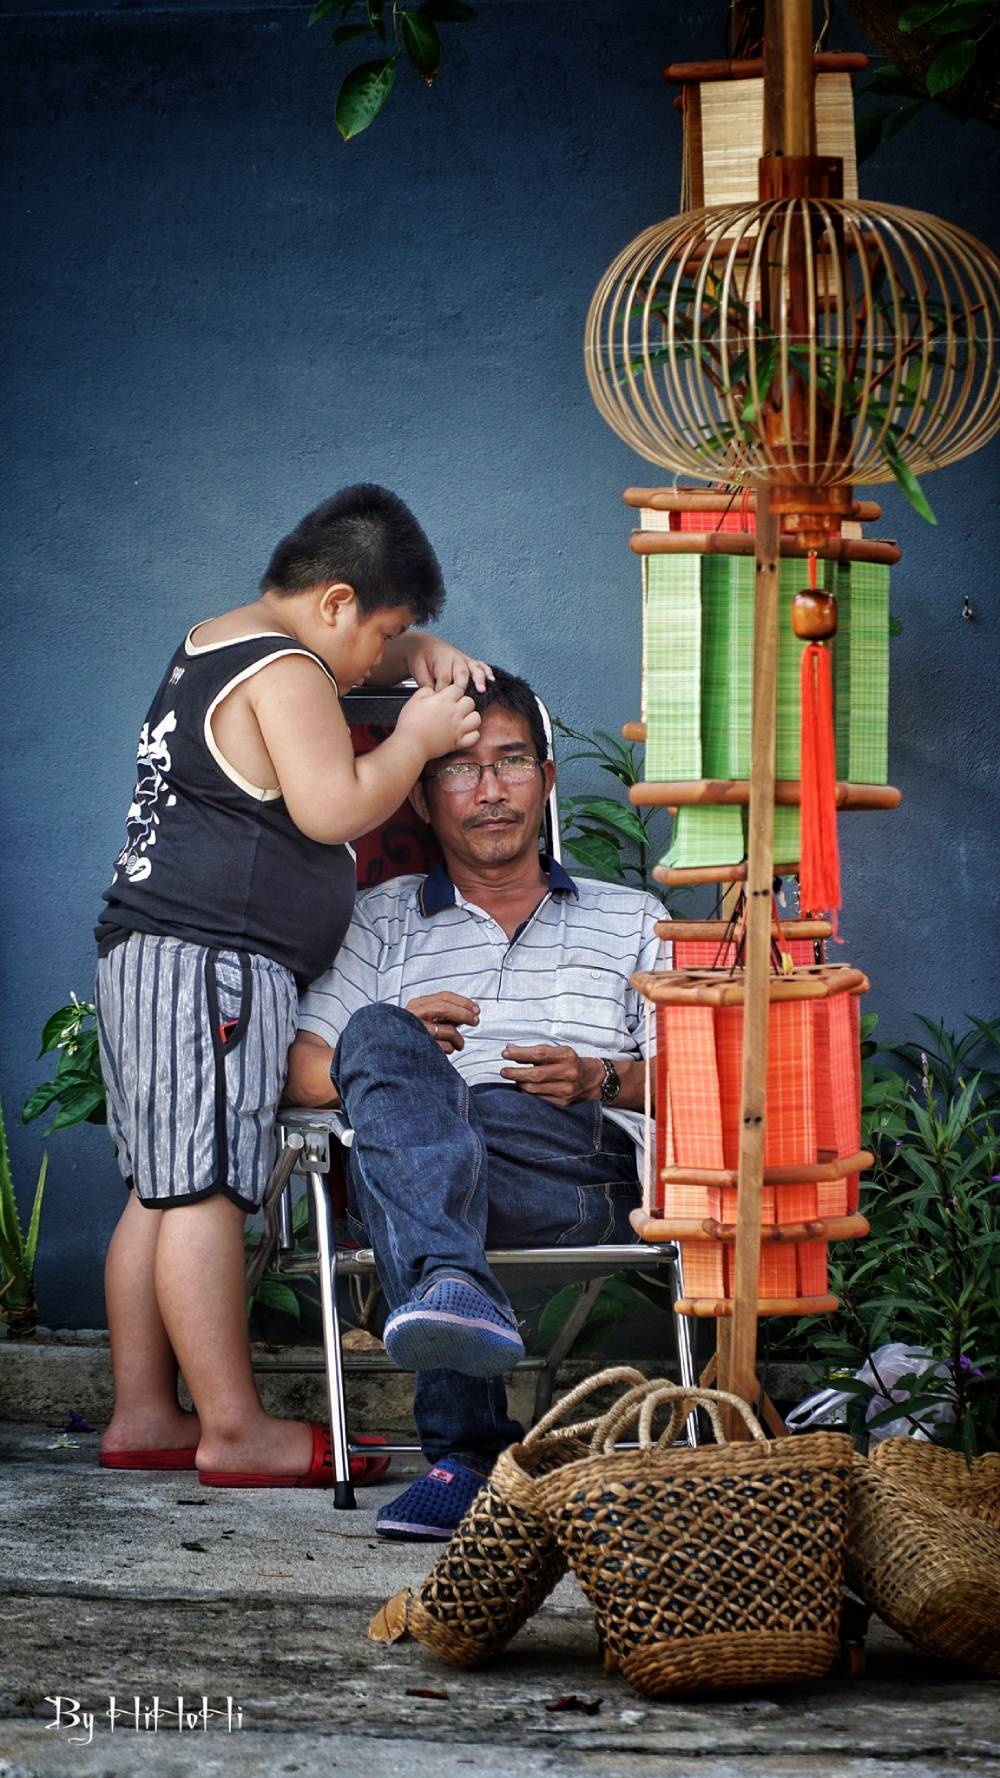  
Hình ảnh quá đỗi giản dị này của mem Việt Nam Ơi khiến nhiều người vô cùng xúc động (Ảnh: Hi Ho Hi)